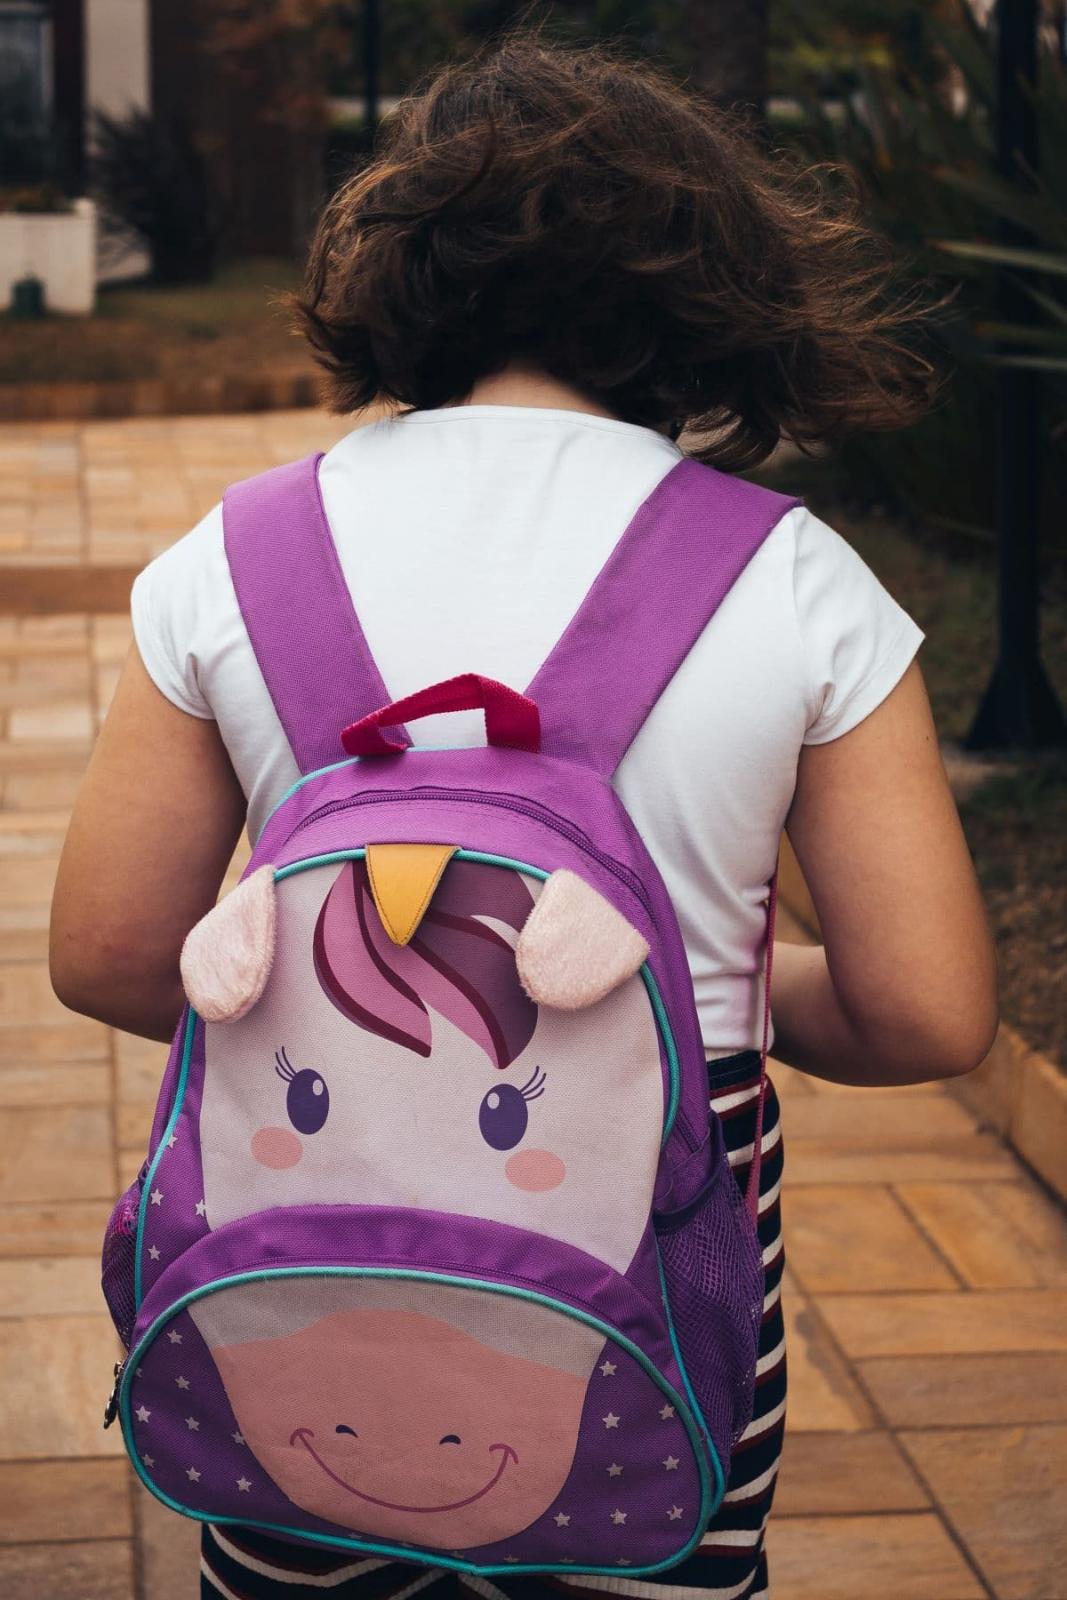 Ποιο είναι το βάρος που πρέπει να έχει η σχολική τσάντα;